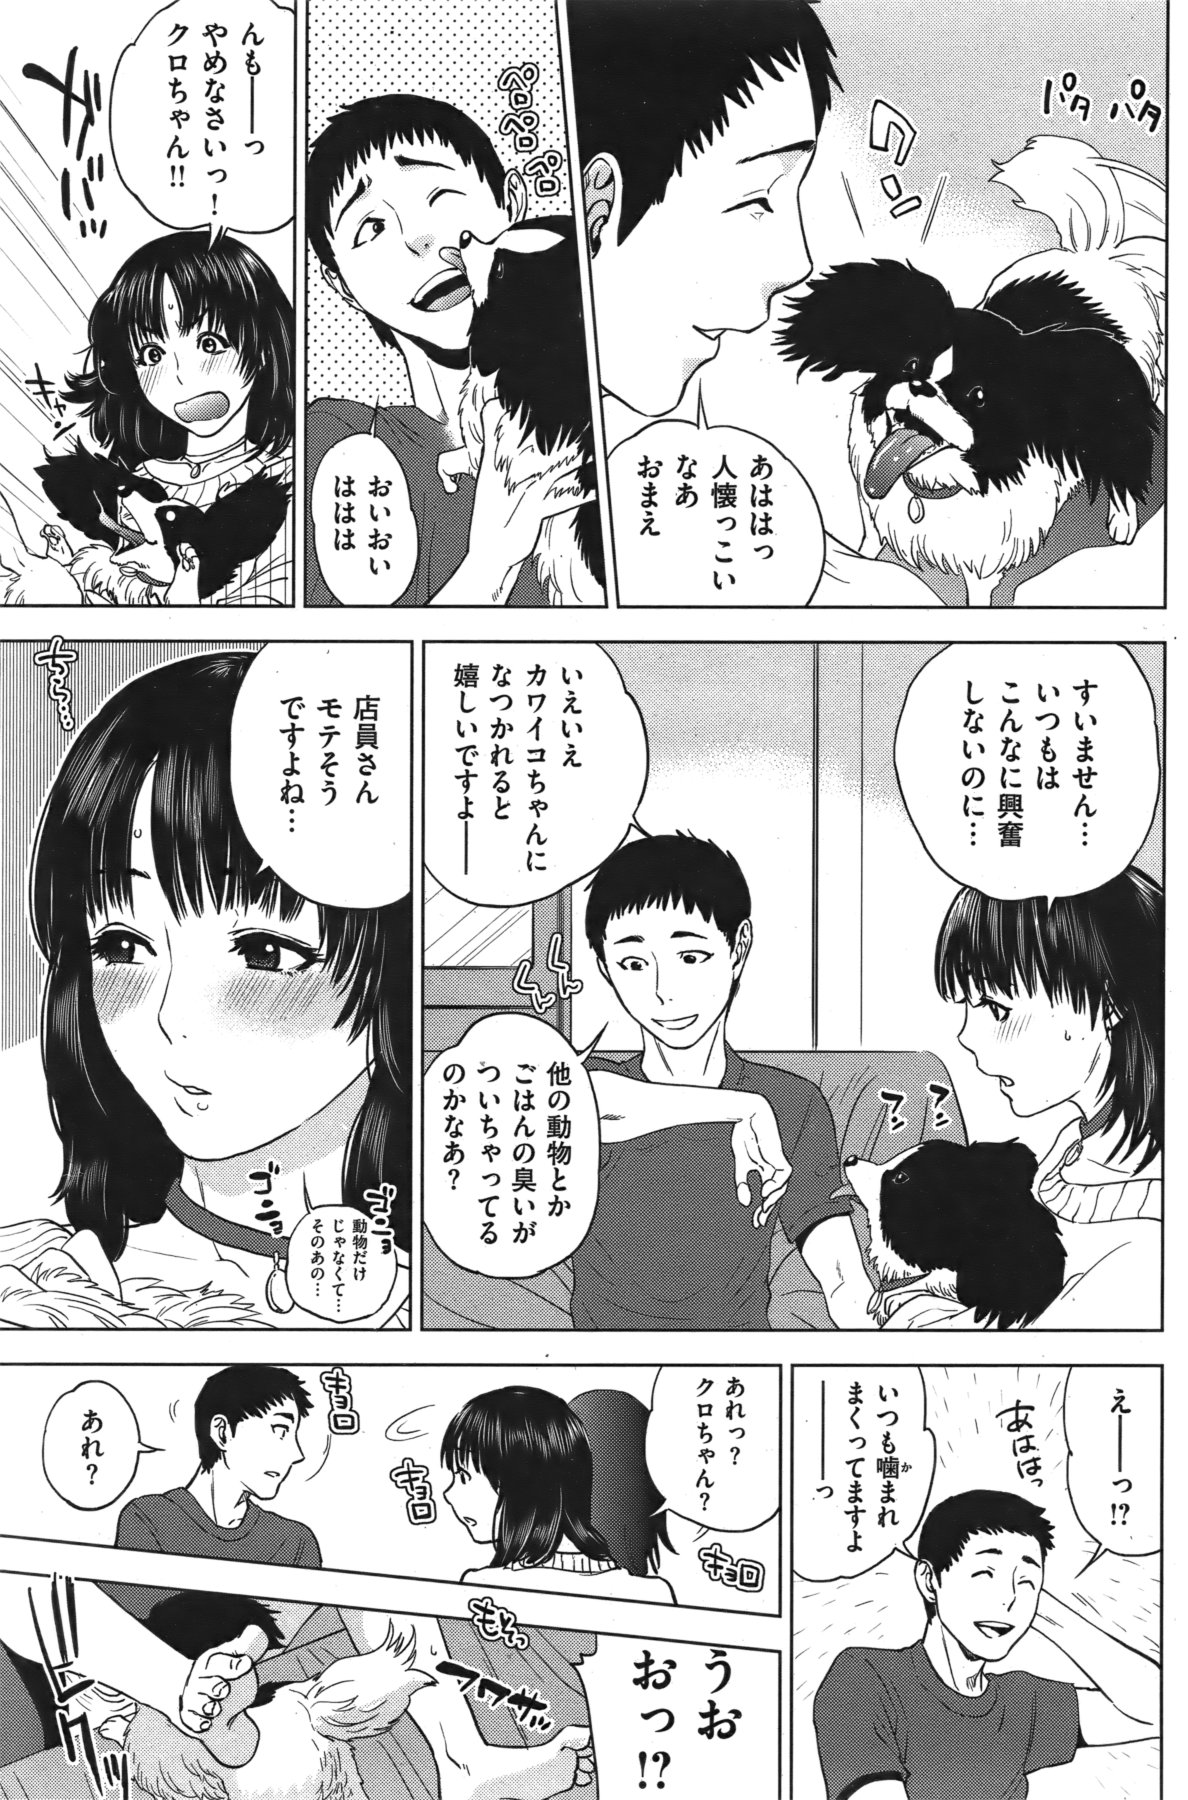 [雑誌] COMIC 失楽天 Vol.06 COMIC 快楽天 2011年12月号増刊